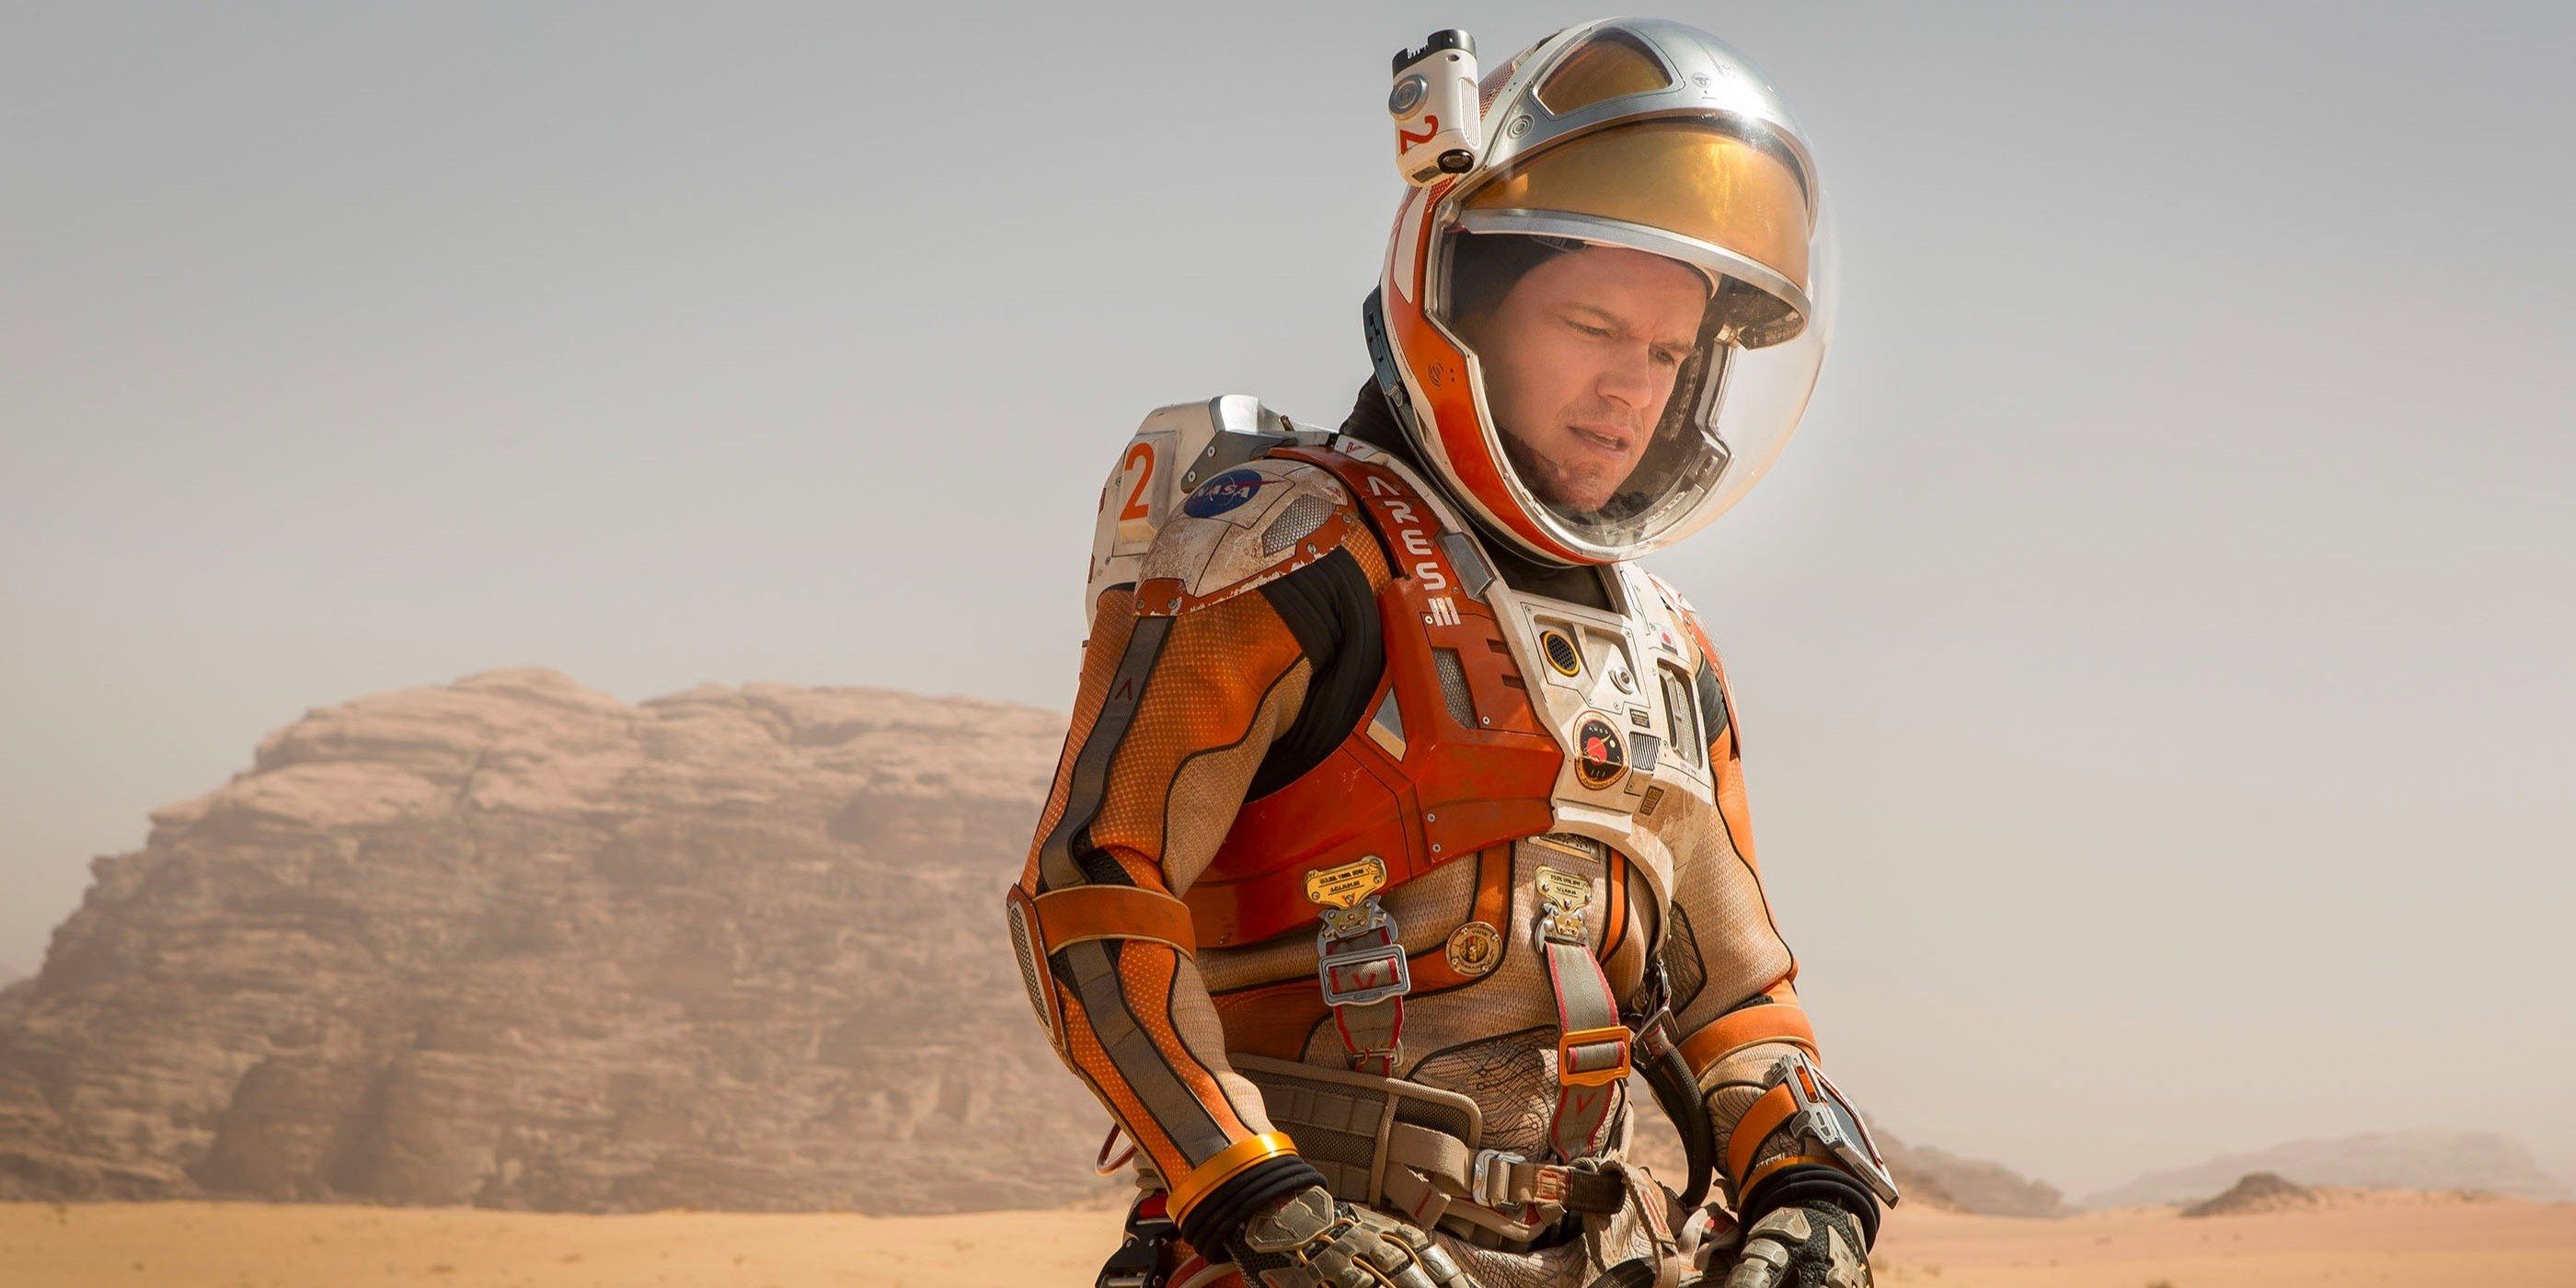 Matt Damon as Mark Watney in a space suit on Mars in The Martian